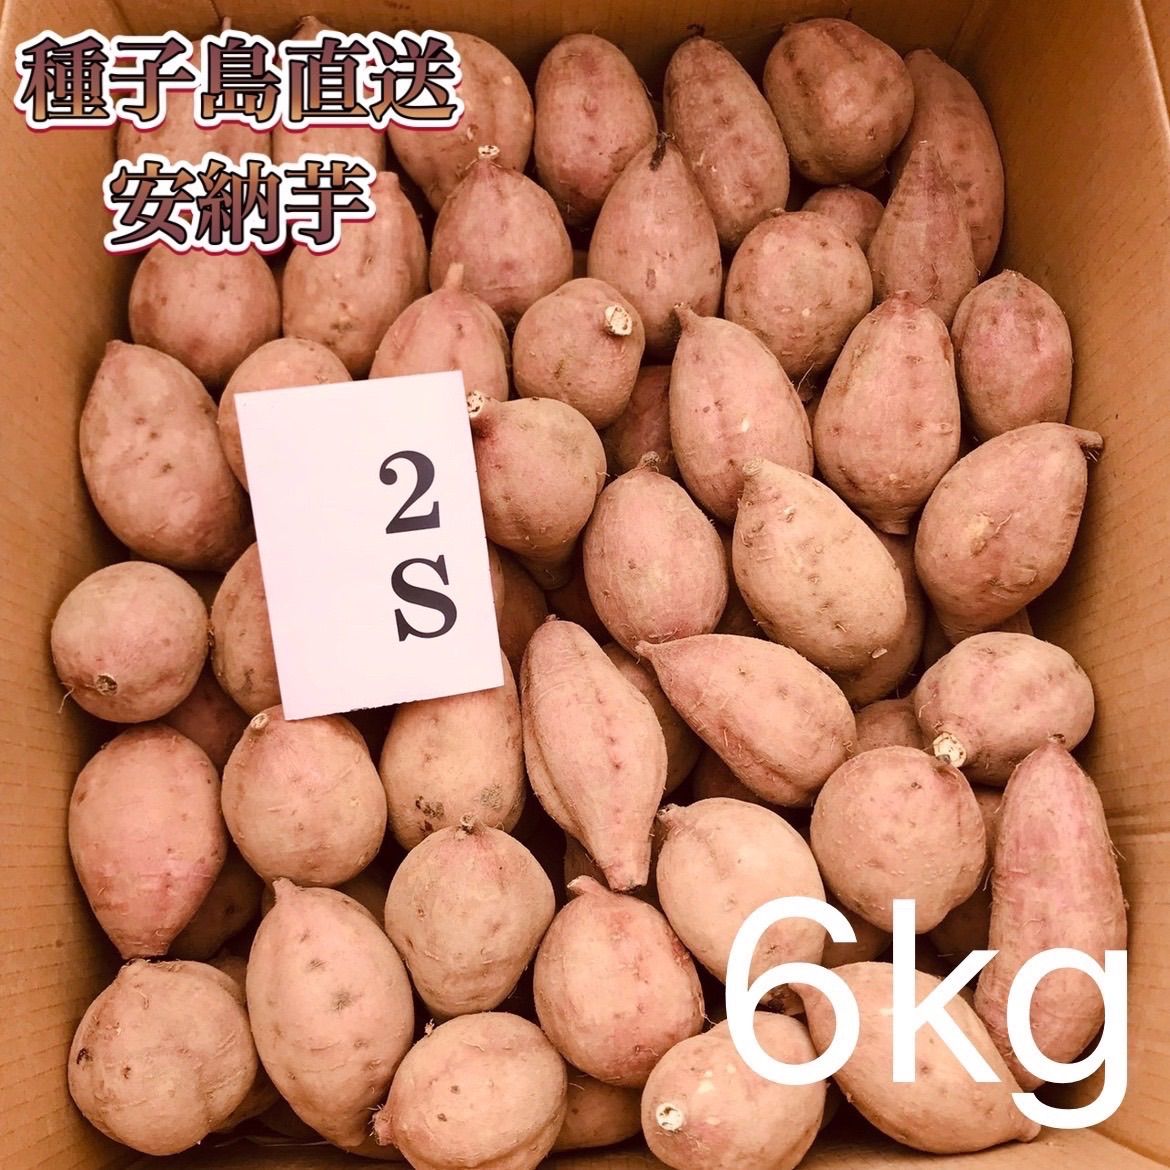 メルカリShops - 【絶品】種子島産 安納芋2S 6kg(箱別)